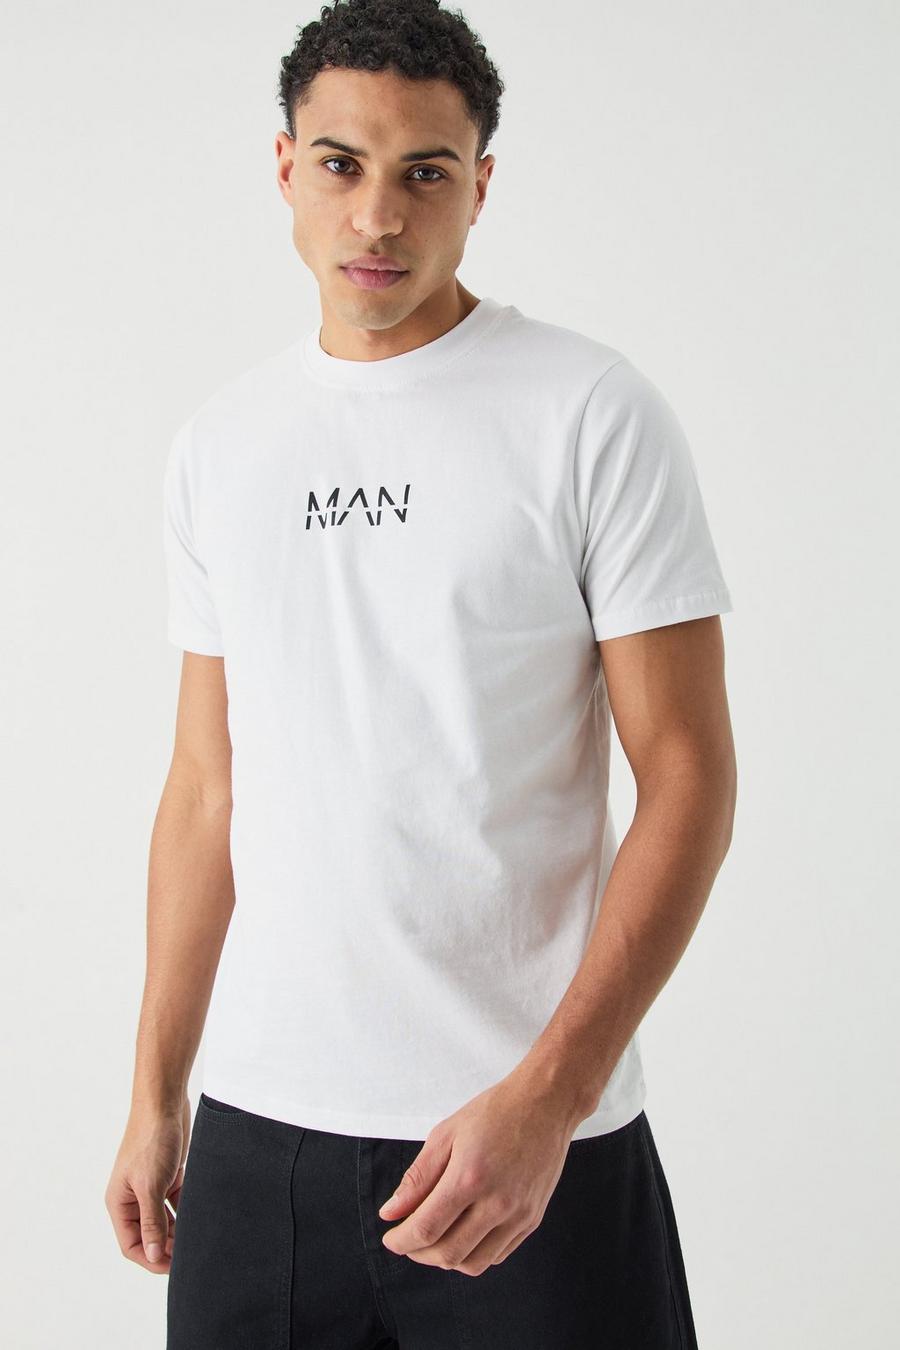 Man Dash Slim Fit T-shirt, White